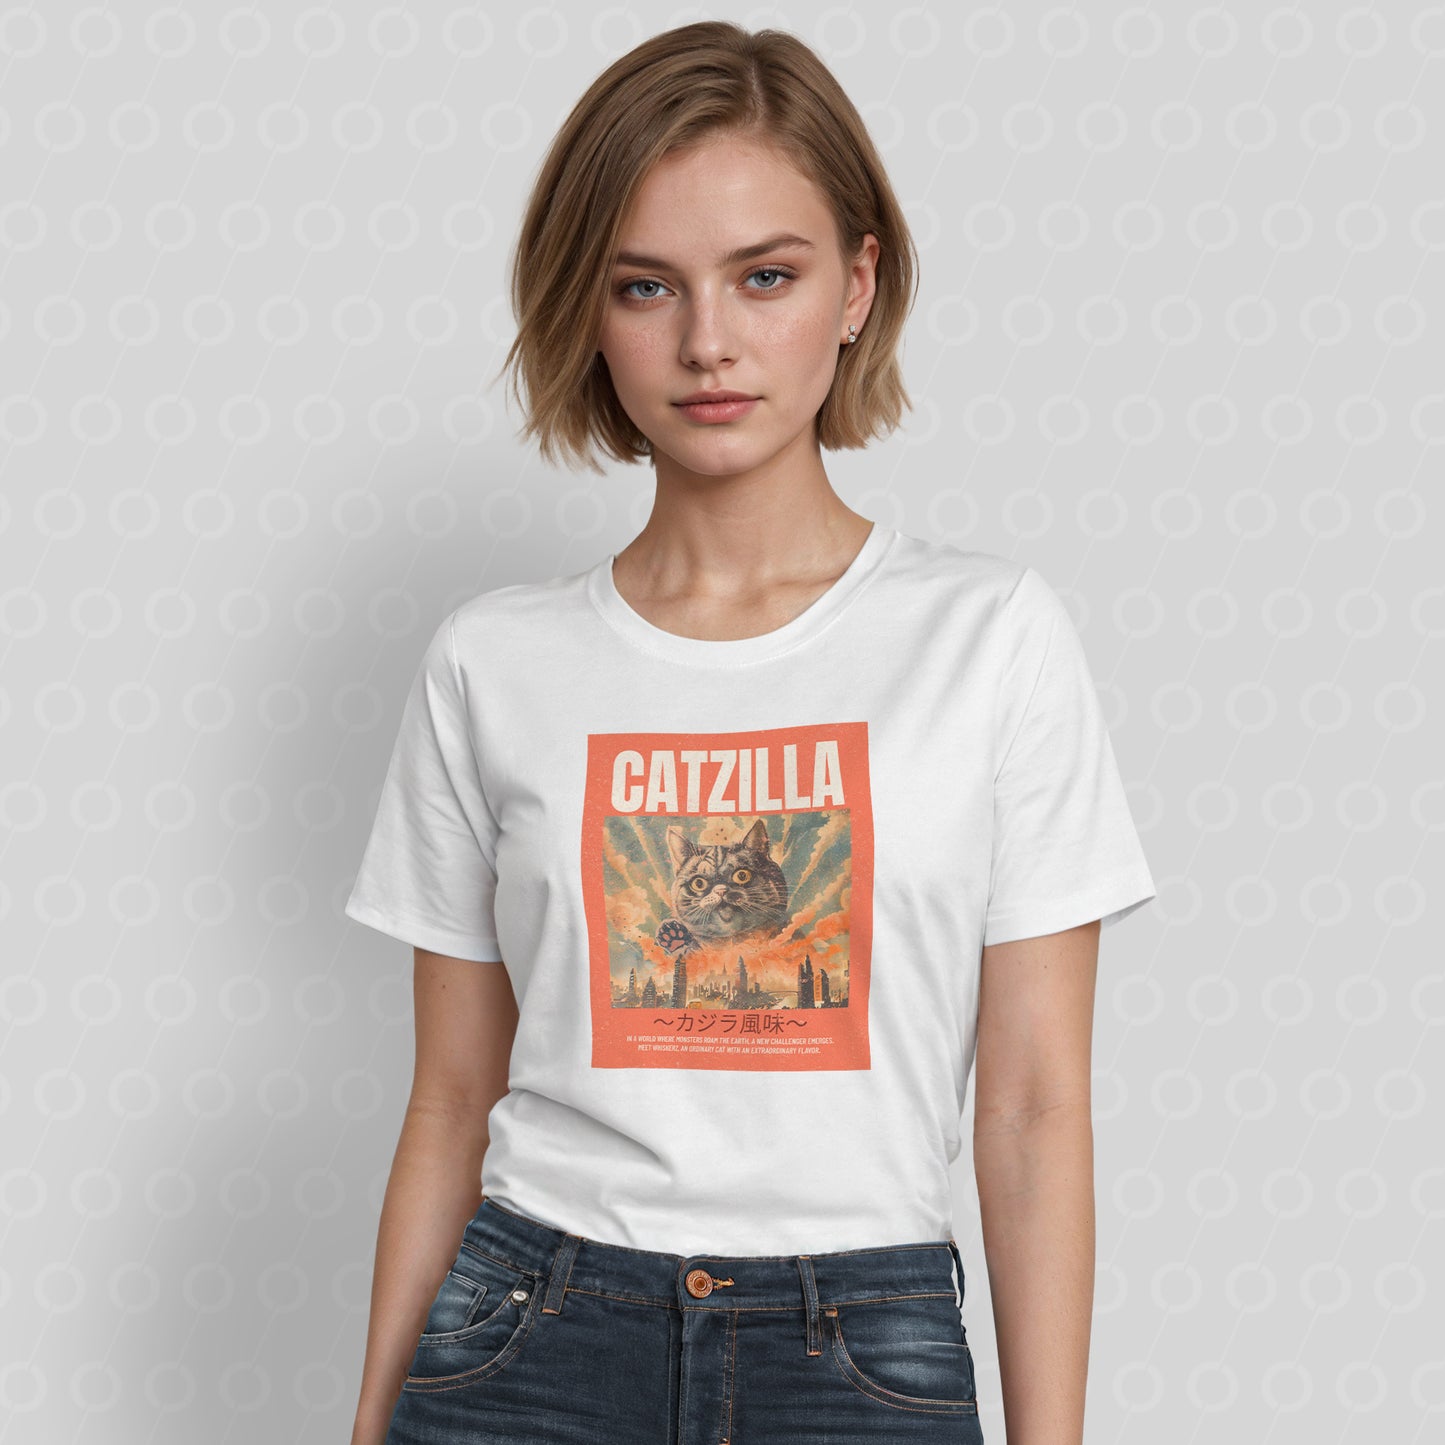 Catzilla Cat Monster T-Shirt White Red T Shirt Tshirt